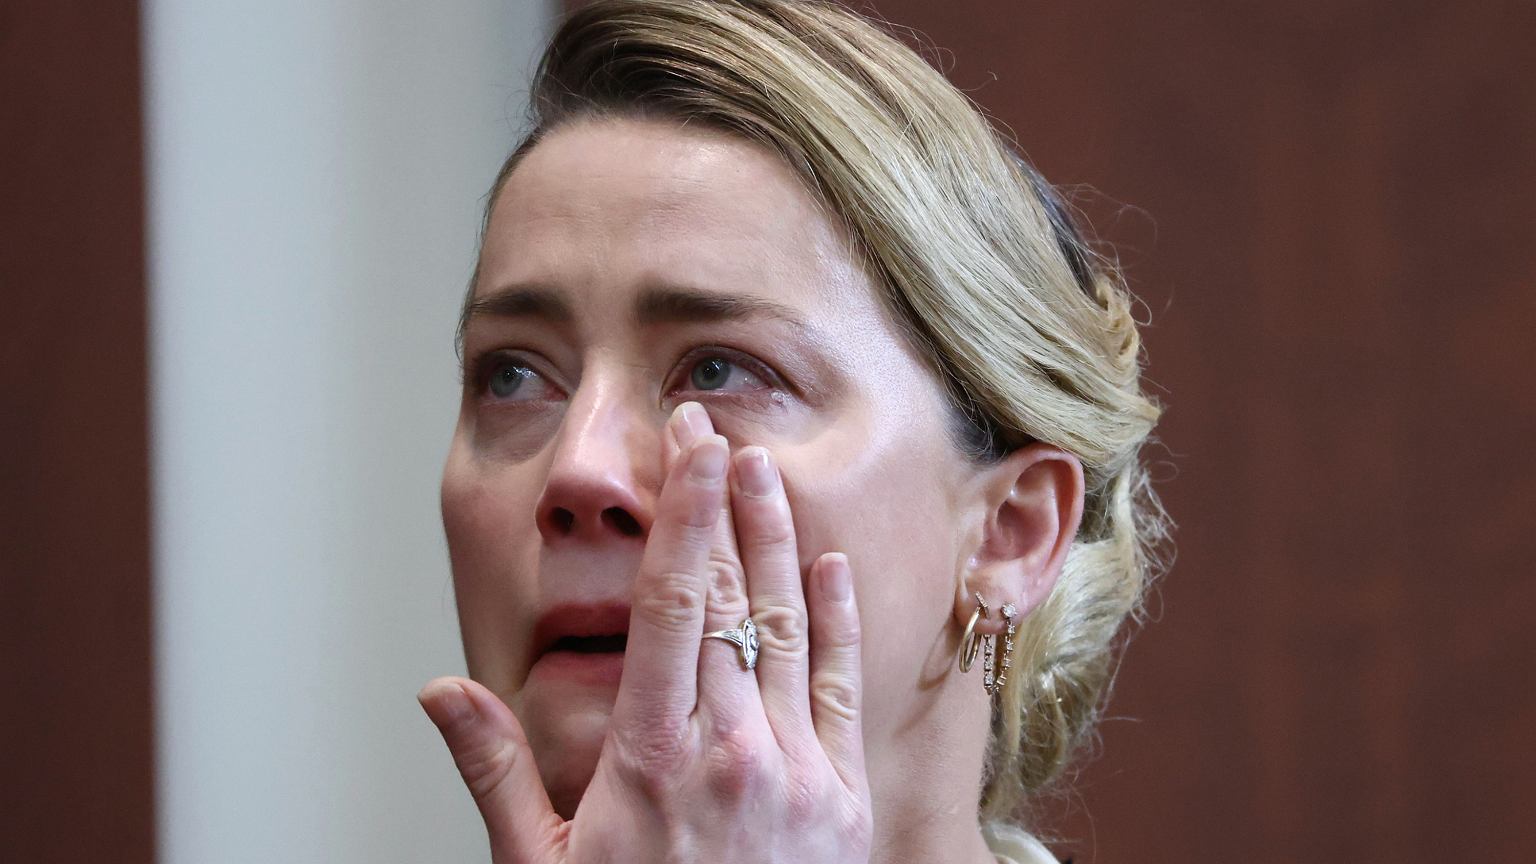 Amber Heard sztucznie wywołuje łzy? Ma pocierać oczy specjalną substancją. Tiktokerka przeanalizowała nagranie - Plotek.pl